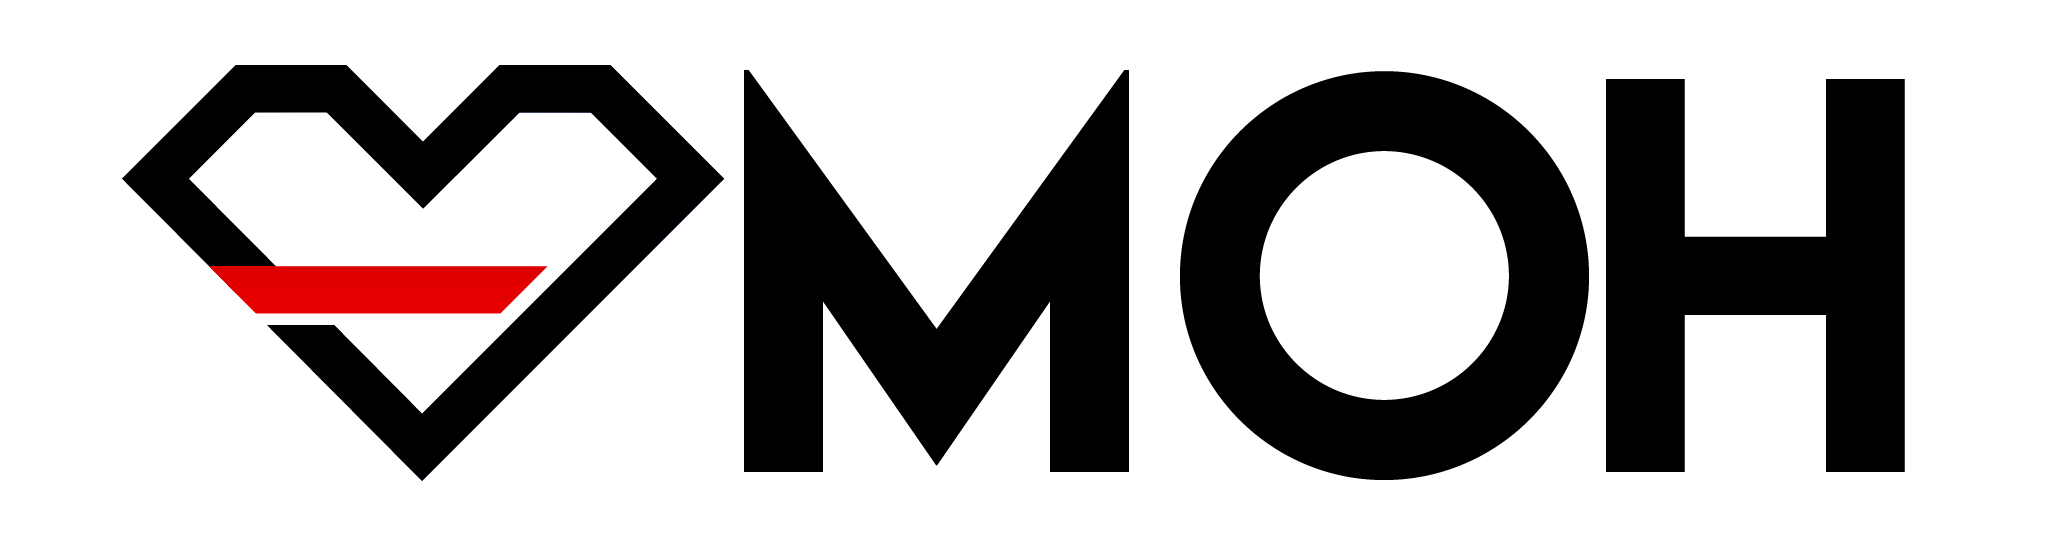 MOH Logo